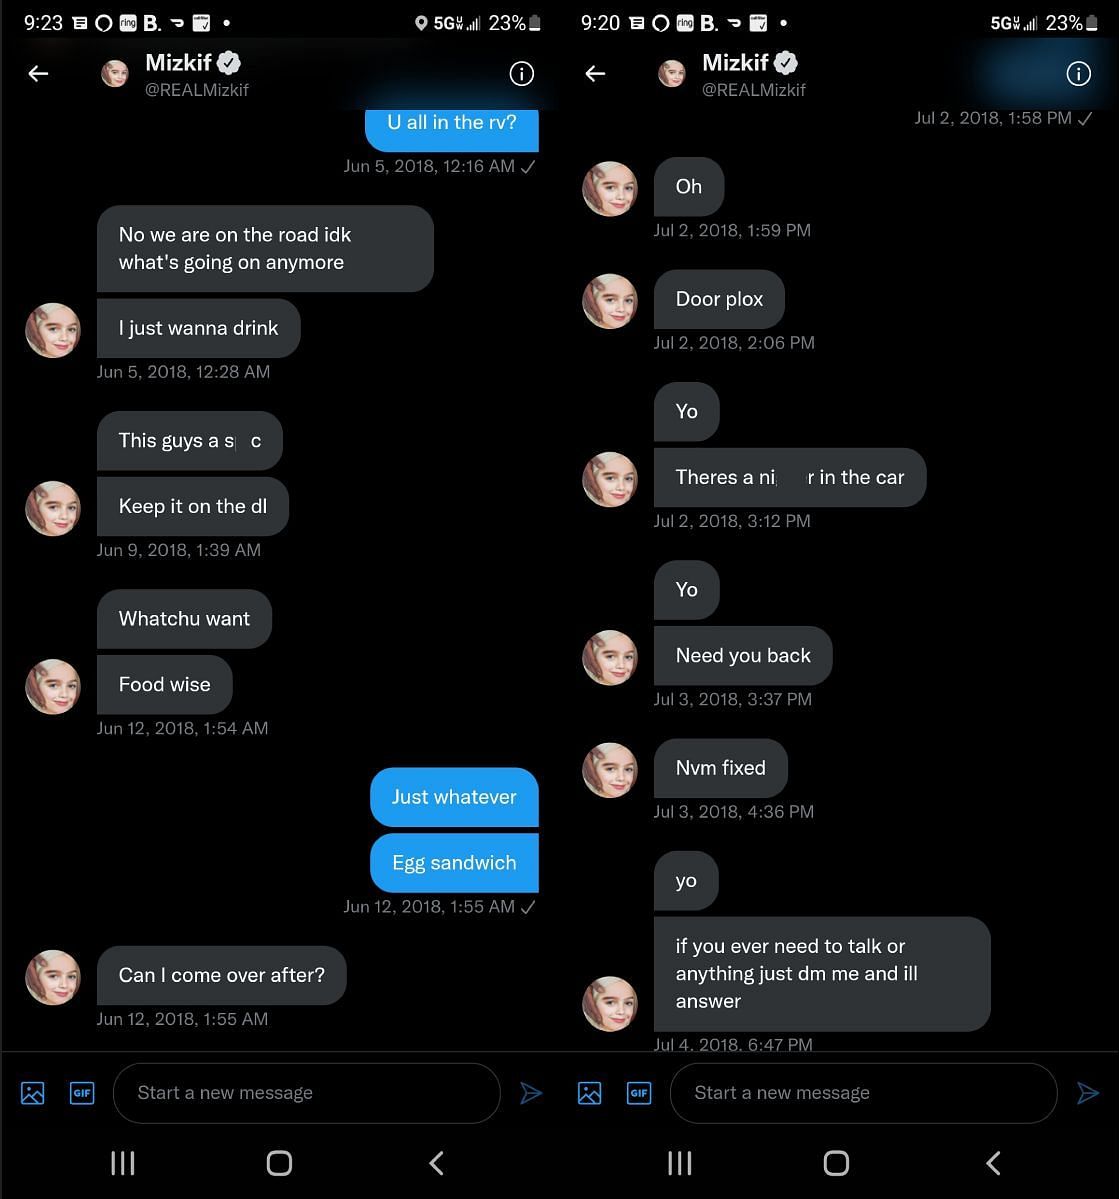 Ice Poseidon leaking old DM conversation featuring Mizkif 1/2 (Images via Twitter)